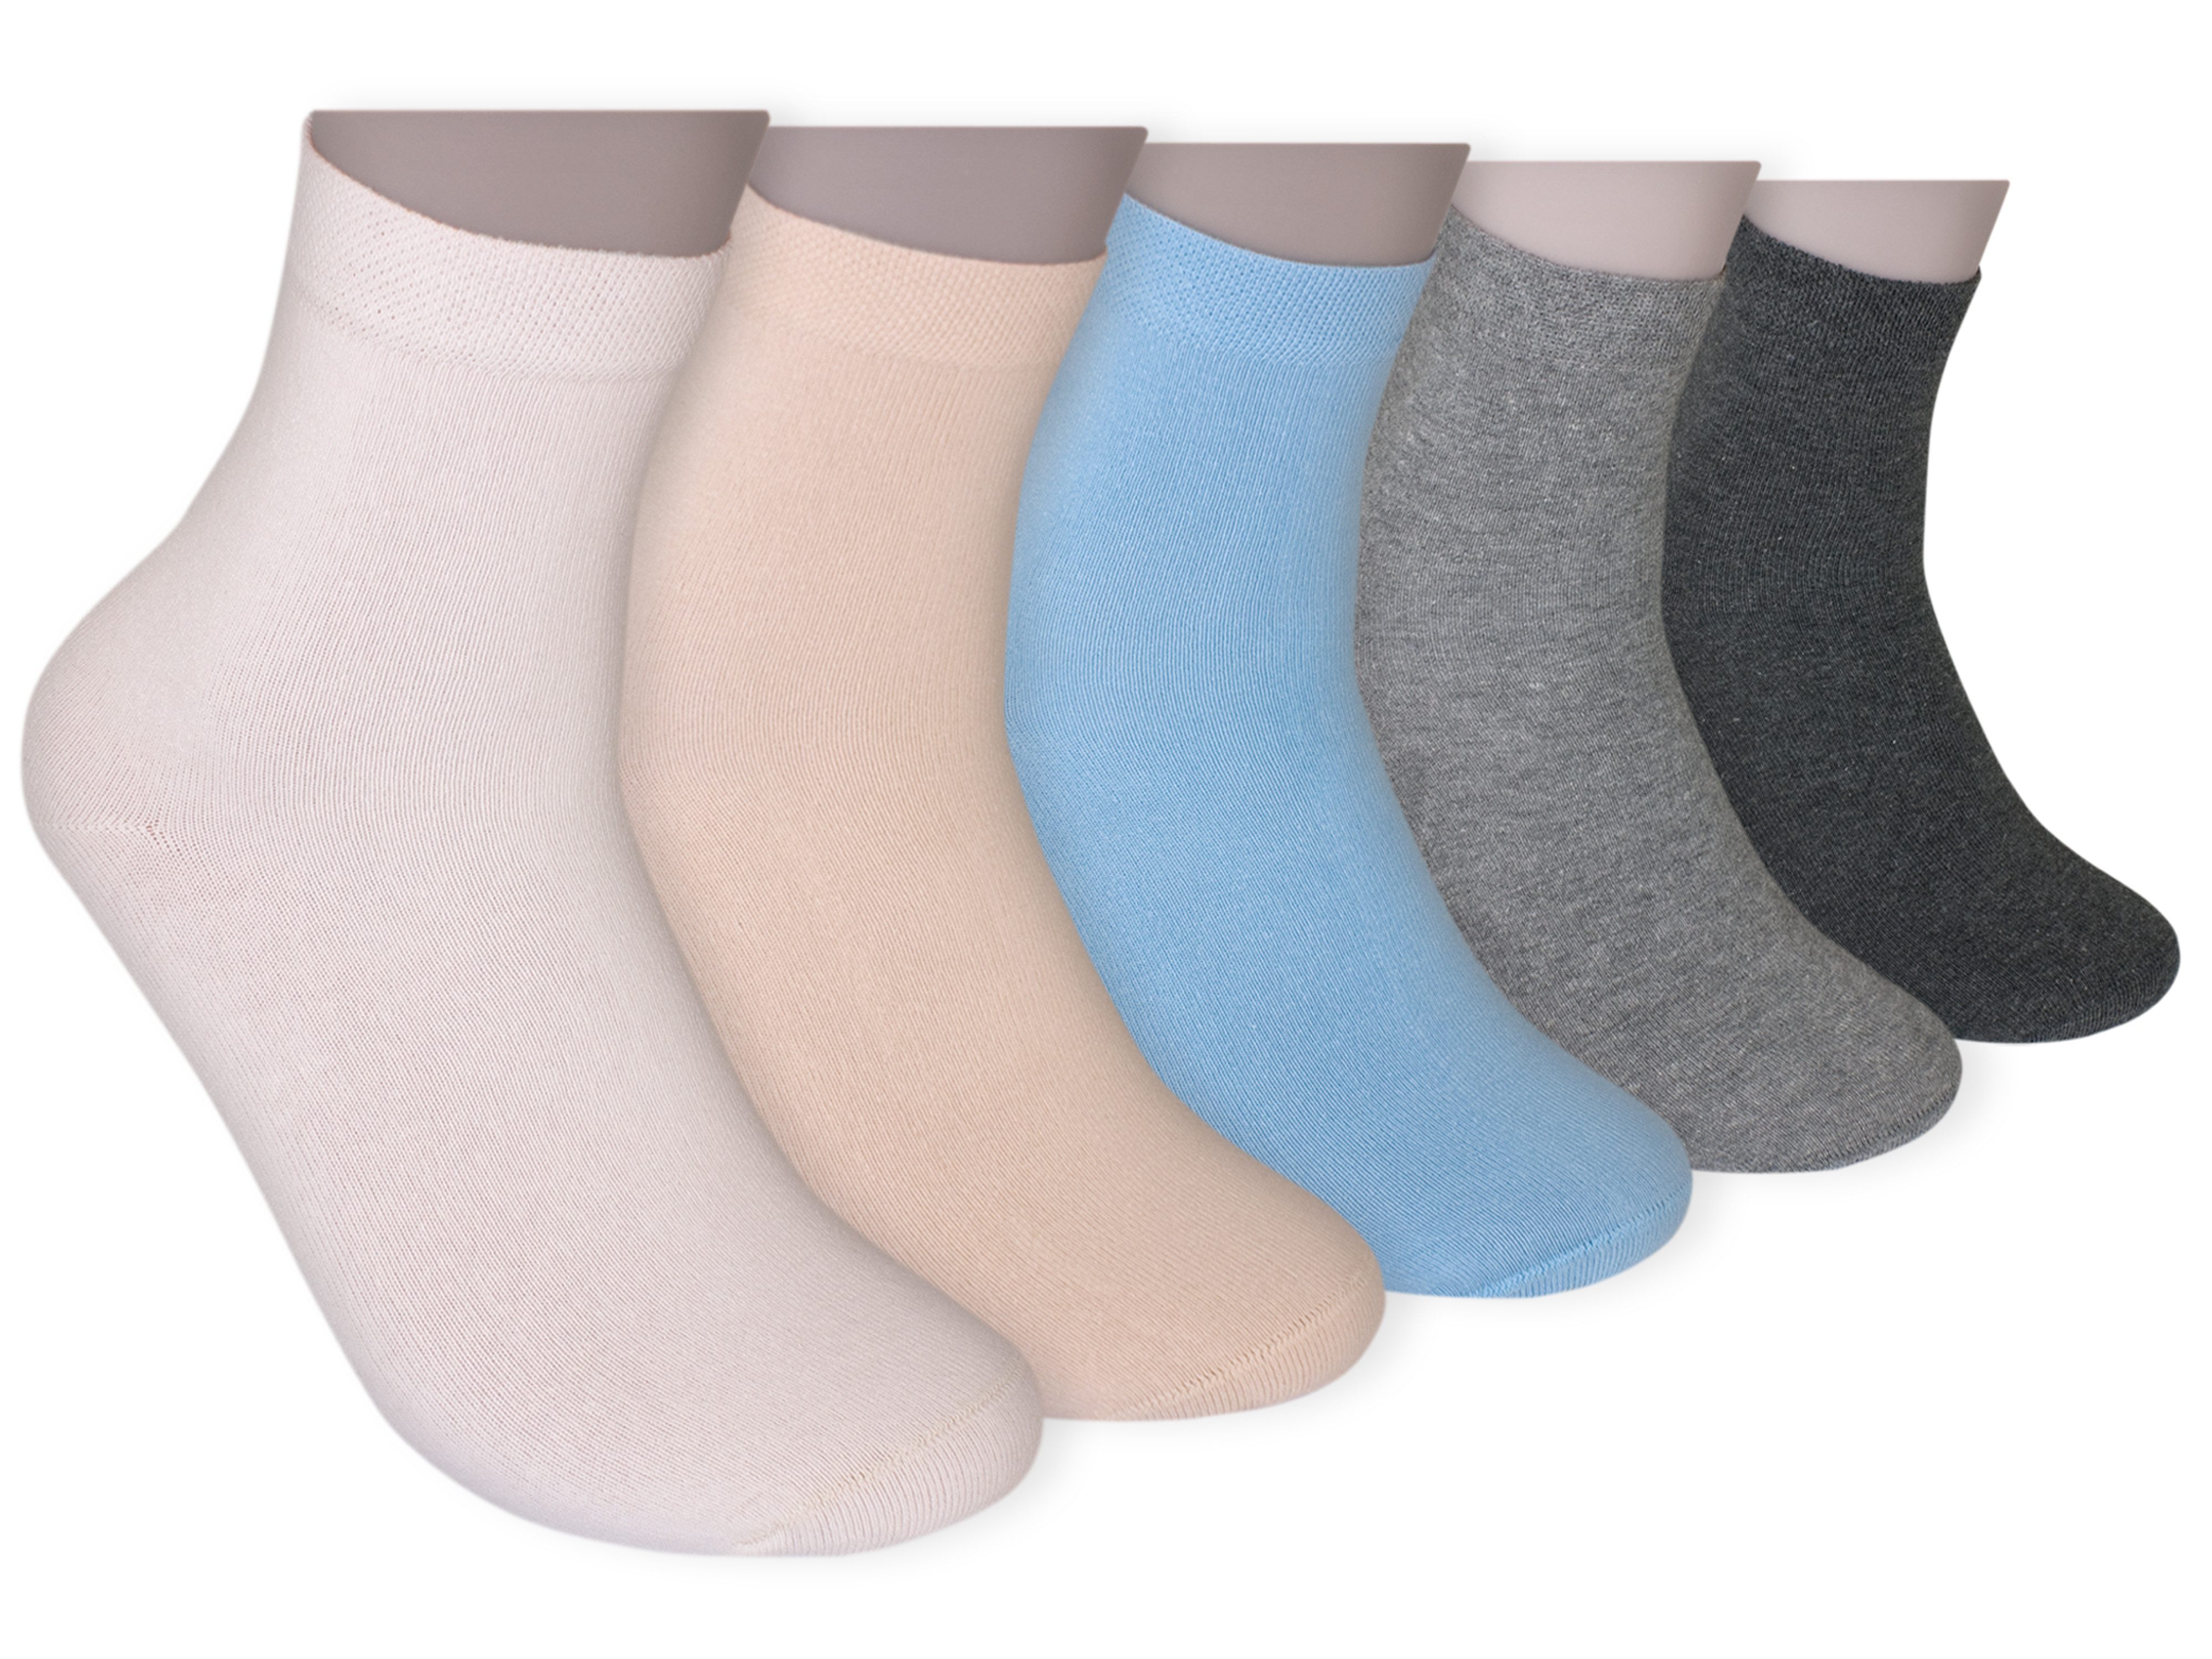 Die Sockenbude Kurzsocken UNI - Damen Kurzsocken (Bund, 5-Paar, grau blau hellbraun) mit Komfortbund ohne Gummi